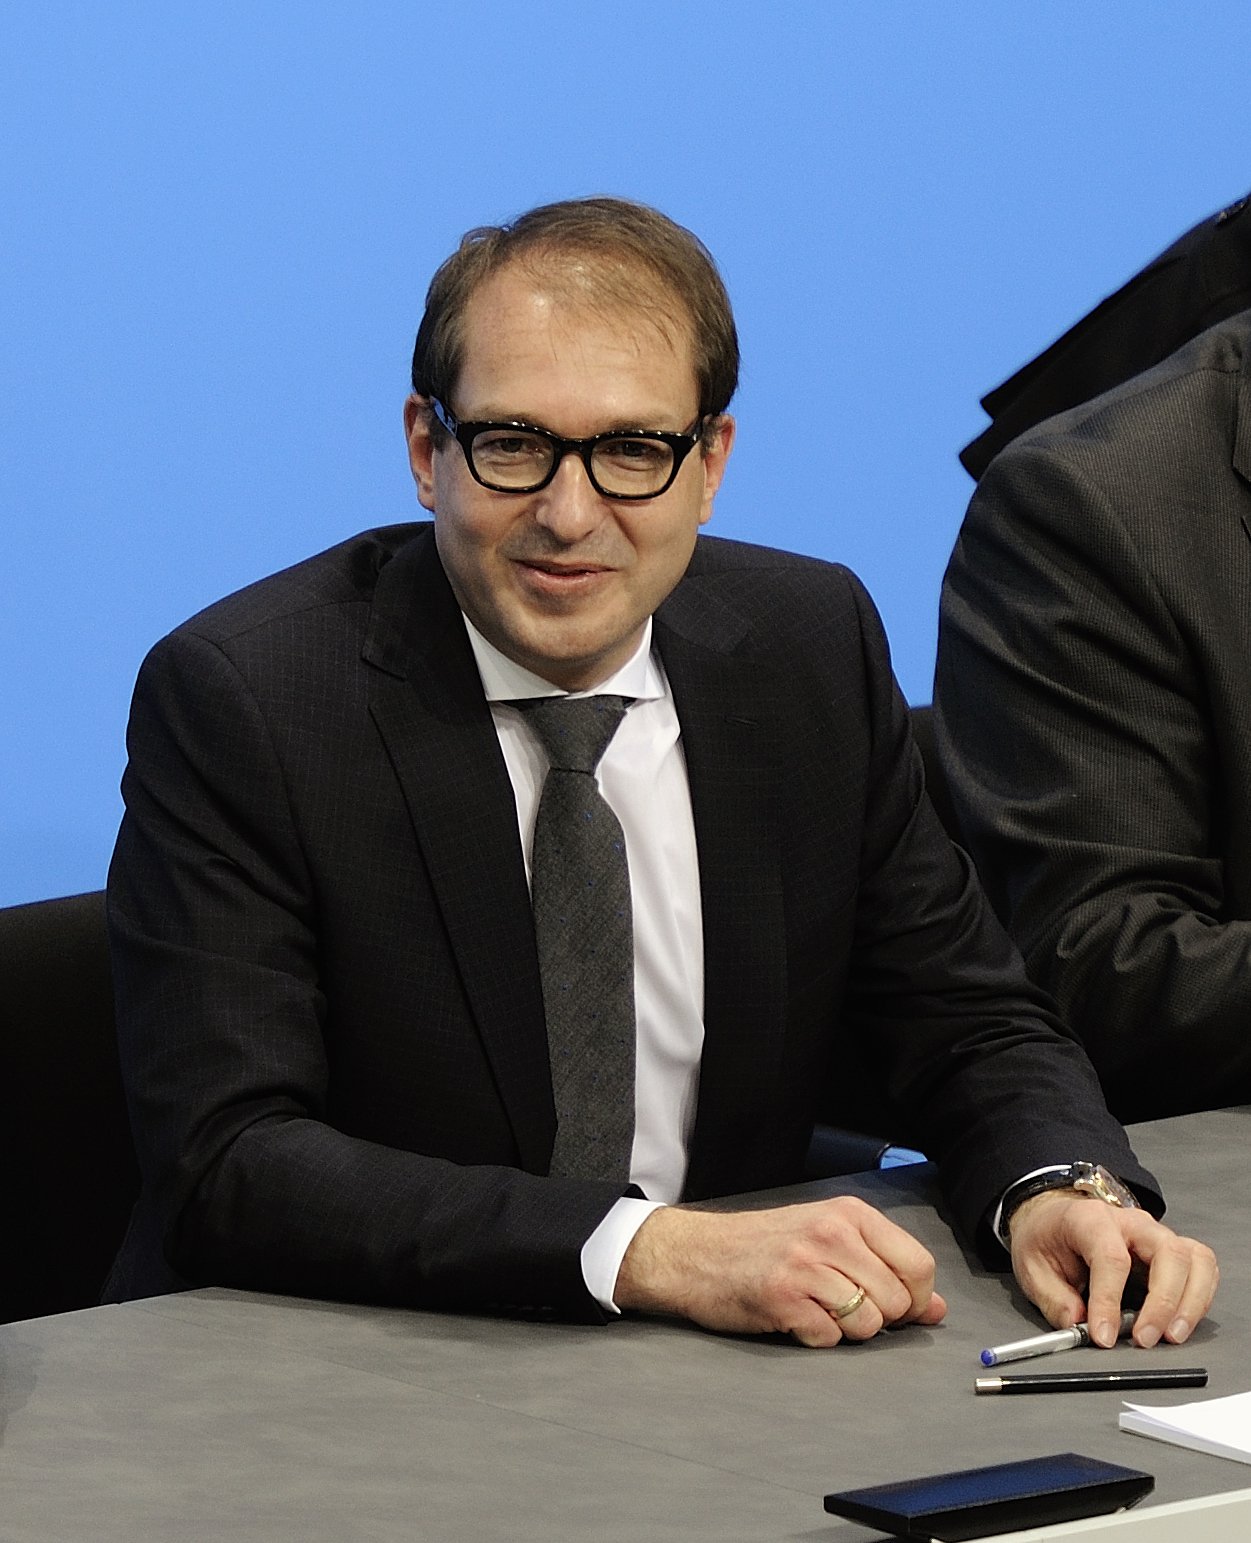 El líder de la CSU en el Bundestag considera "legítima" la causa independentista